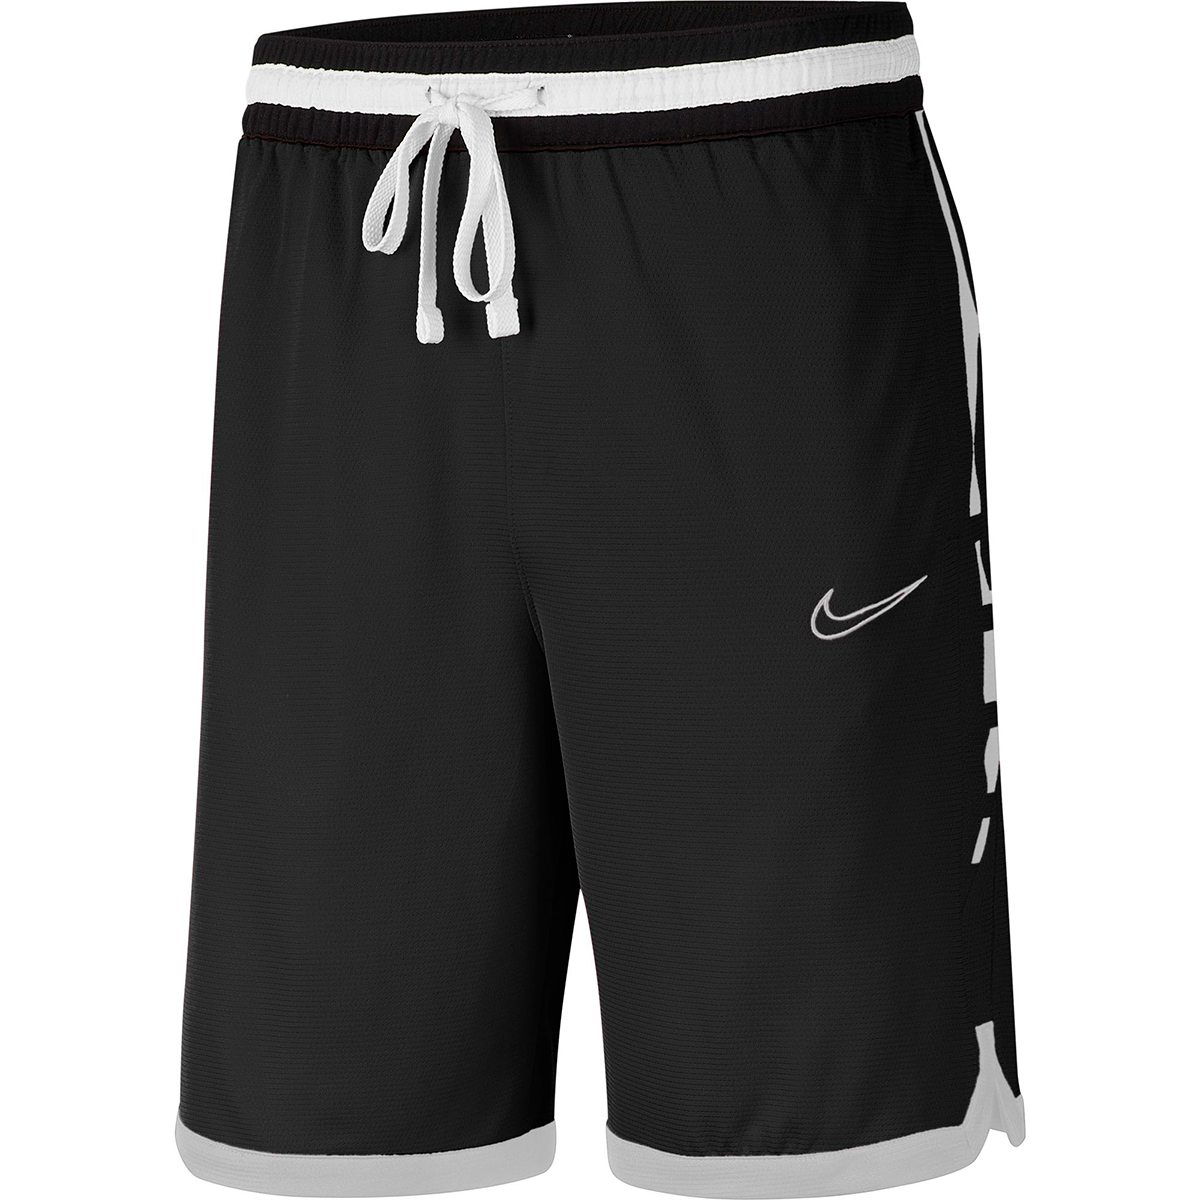 Nike Men's Dri-Fit Elite Shorts - Black, M